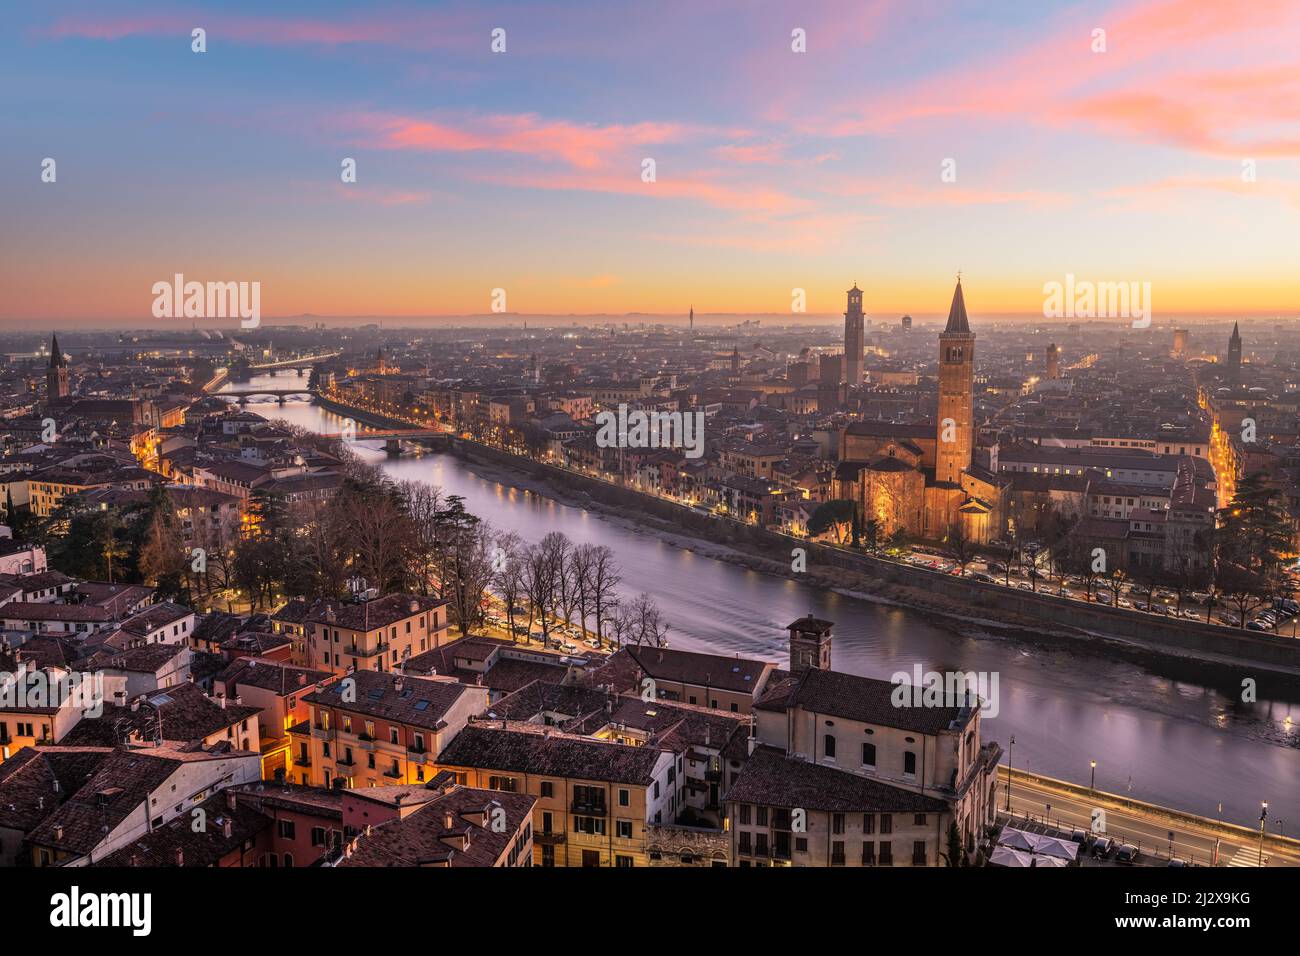 Verona, Italy skyline on the Adige River at dusk. Stock Photo